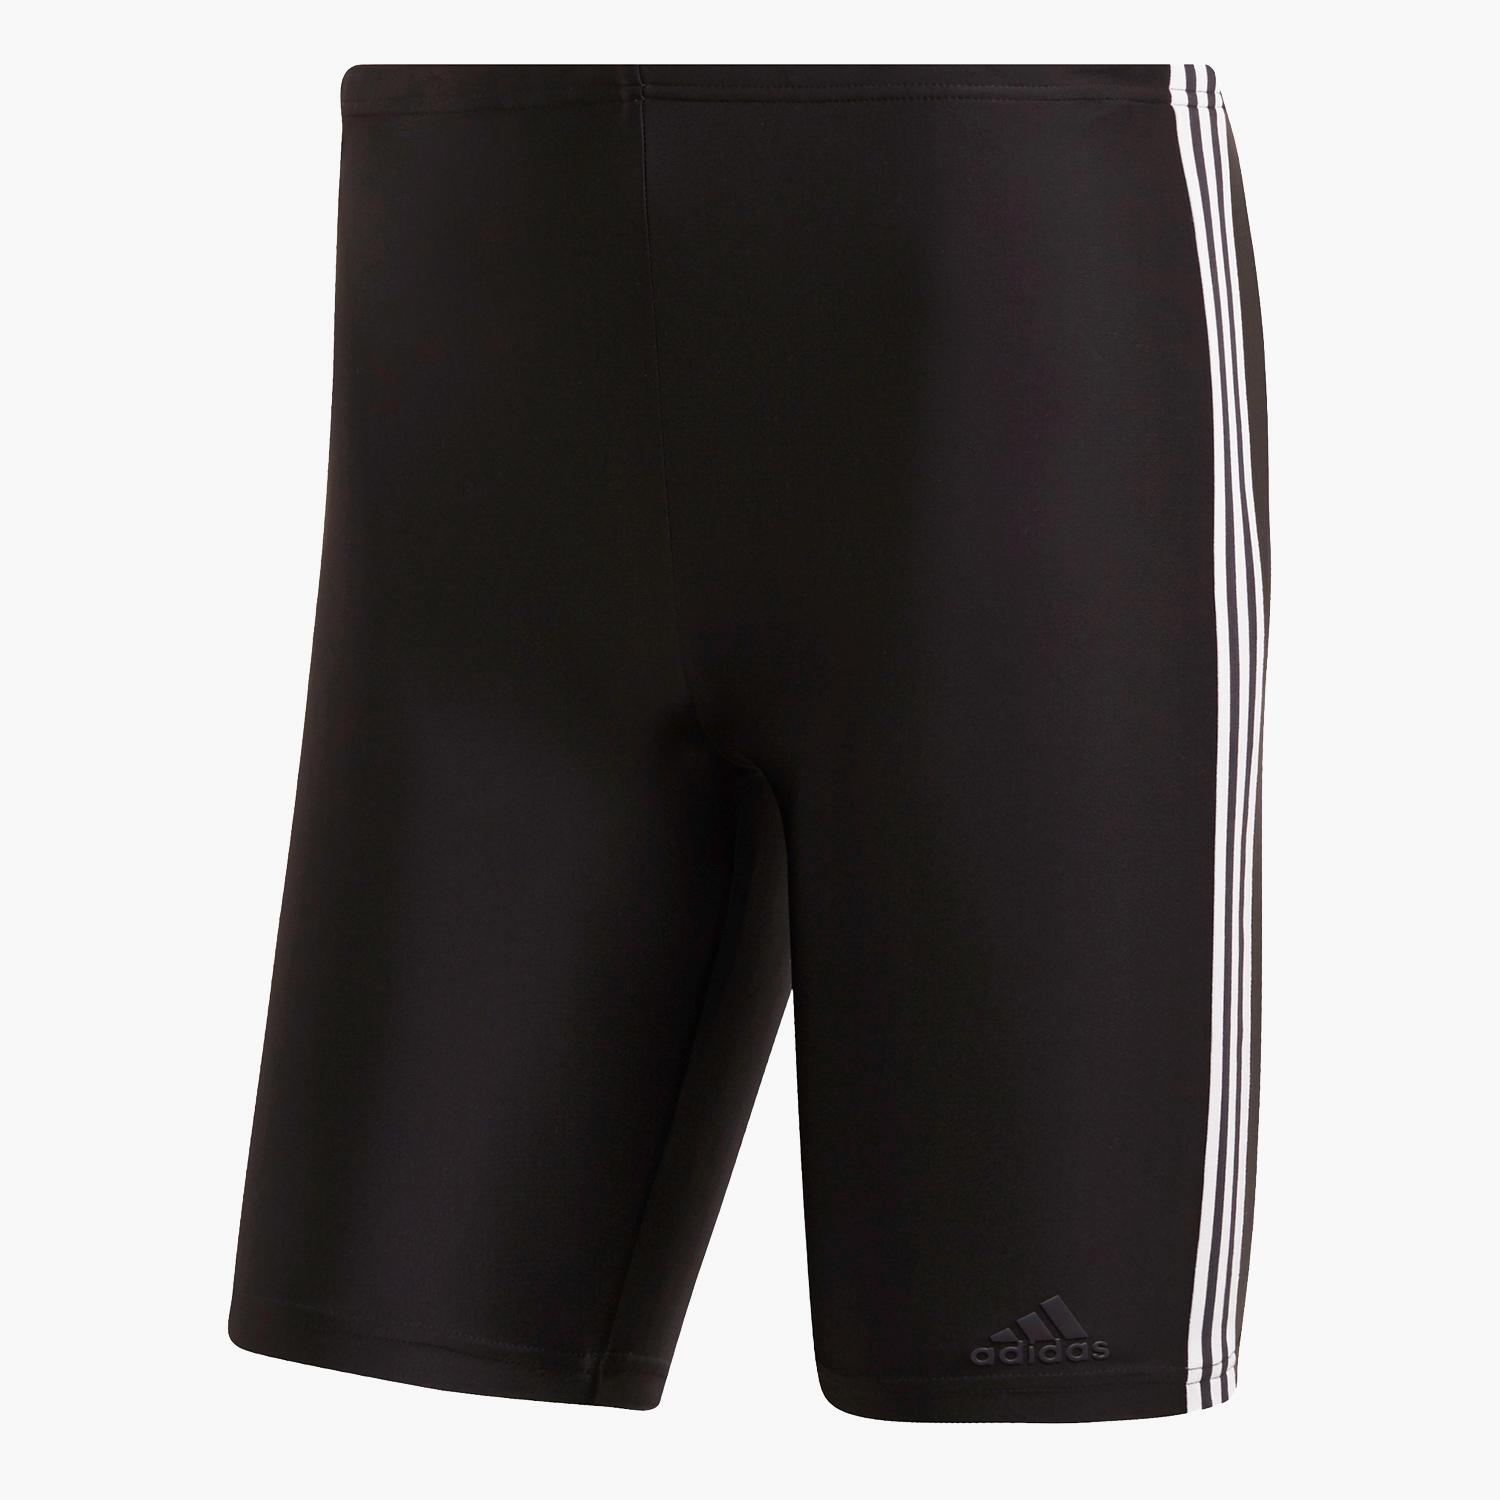 adidas Fit - Noir - Maillot de bain Bermuda Homme sports taille S